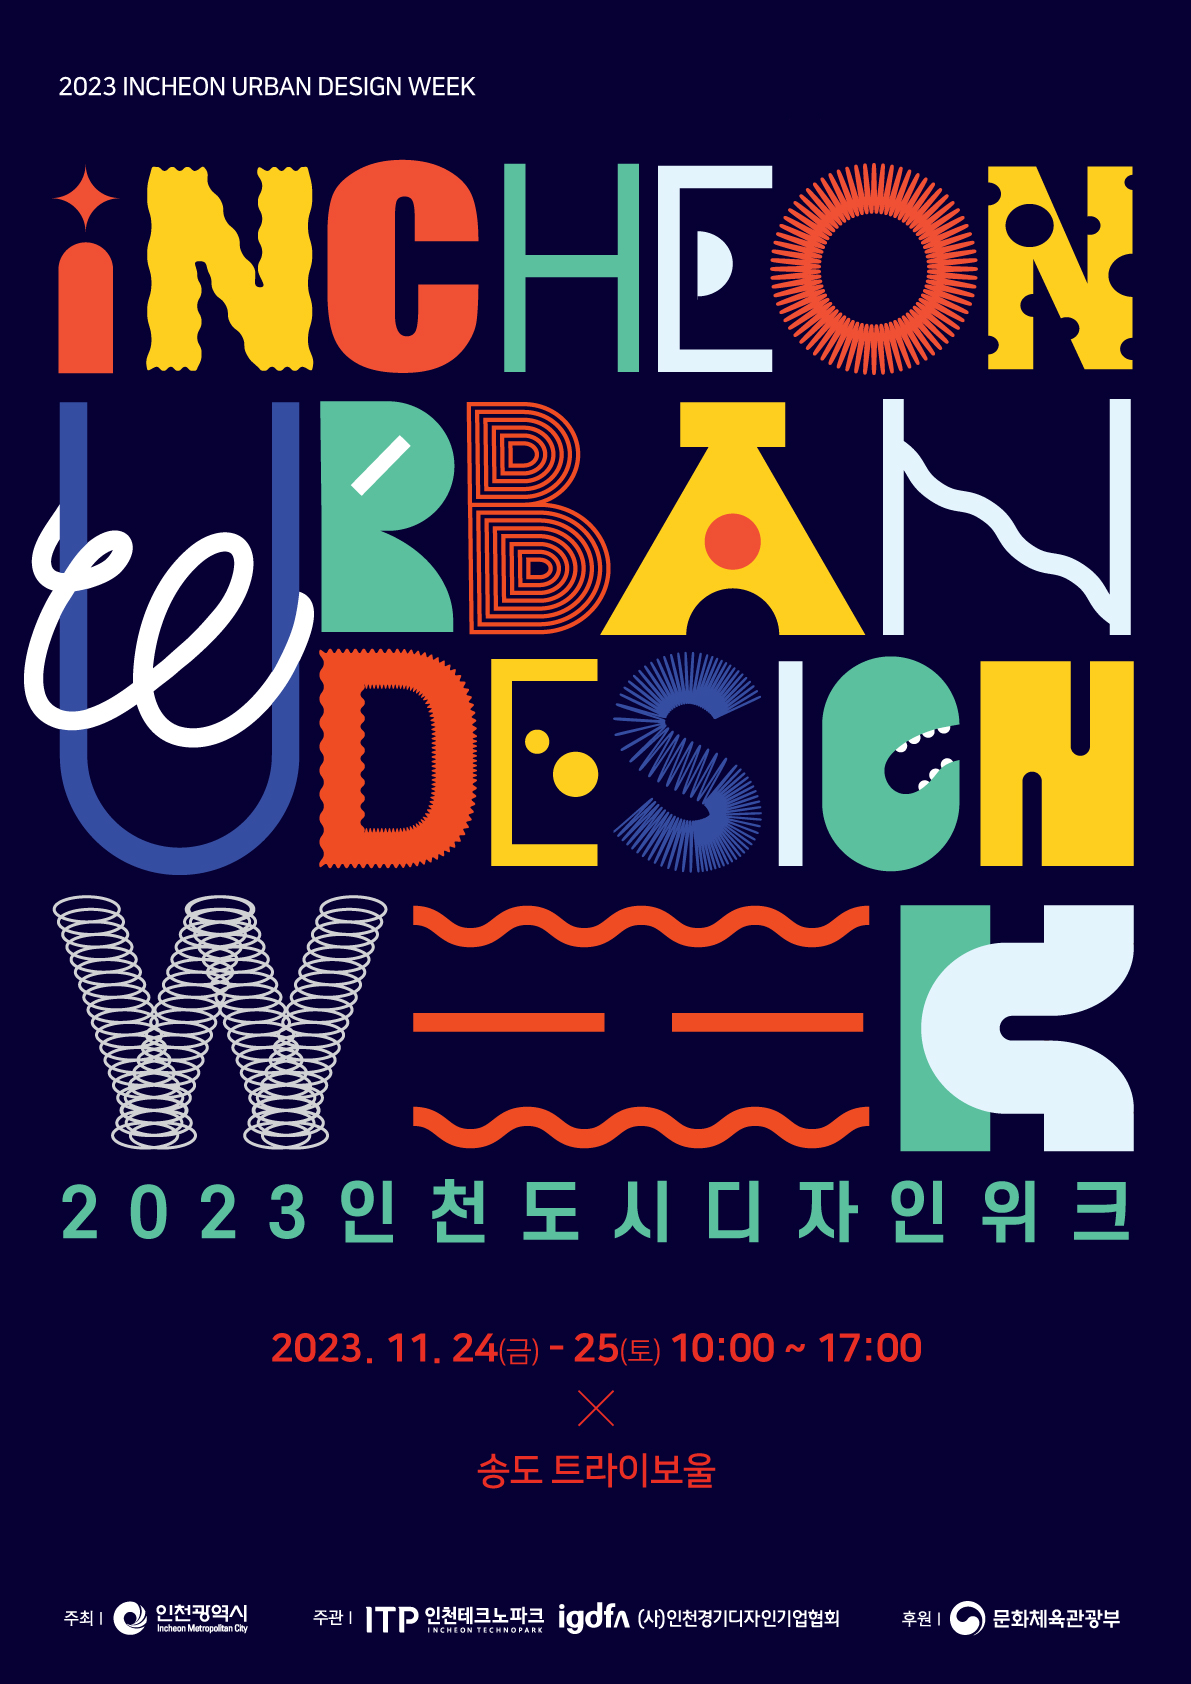 2023 인천도시디자인 위크(인천시민디자인 한마당) 개최 안내의 1번째 이미지